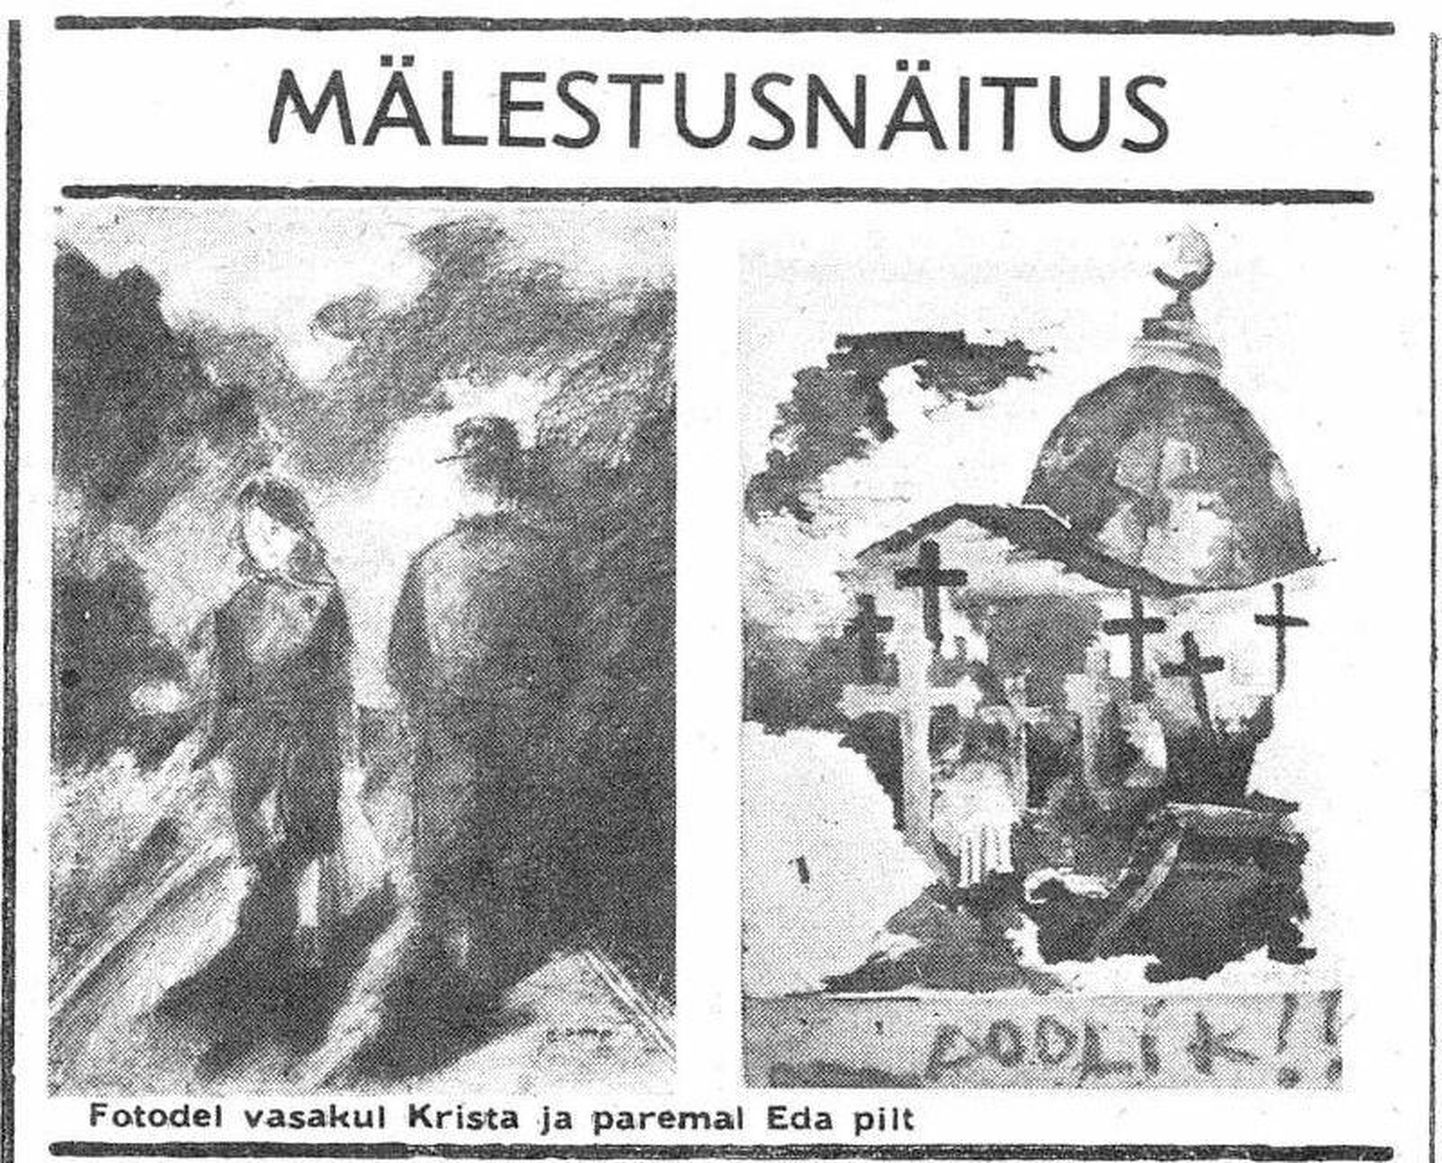 В Таллиннском детском доме творчество организовали выставку в память об убитых эстонках. Слева работа Сарап, а справа - Эйкла.